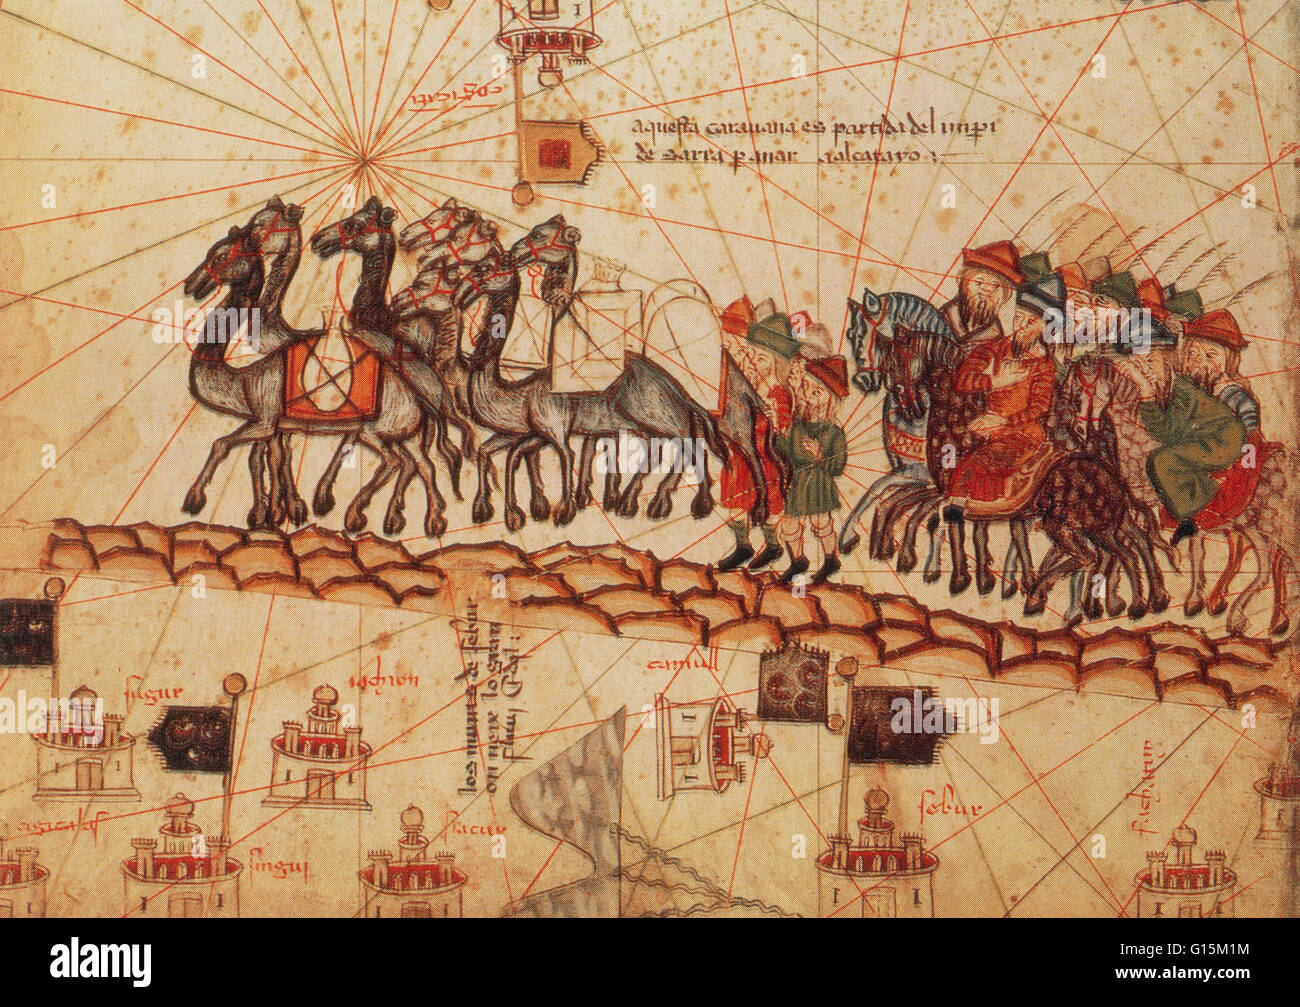 Marco Polo Wohnwagen, in einer Abbildung aus dem katalanischen Atlas ca. 1375. Marco Polo (1254-1324) war ein venezianischer Kaufmann Reisender und die berühmtesten Bewohner des Westens an der Seidenstraße gereist sein. Er übertraf die anderen Reisenden in seiner Entschlossenheit, Stockfoto